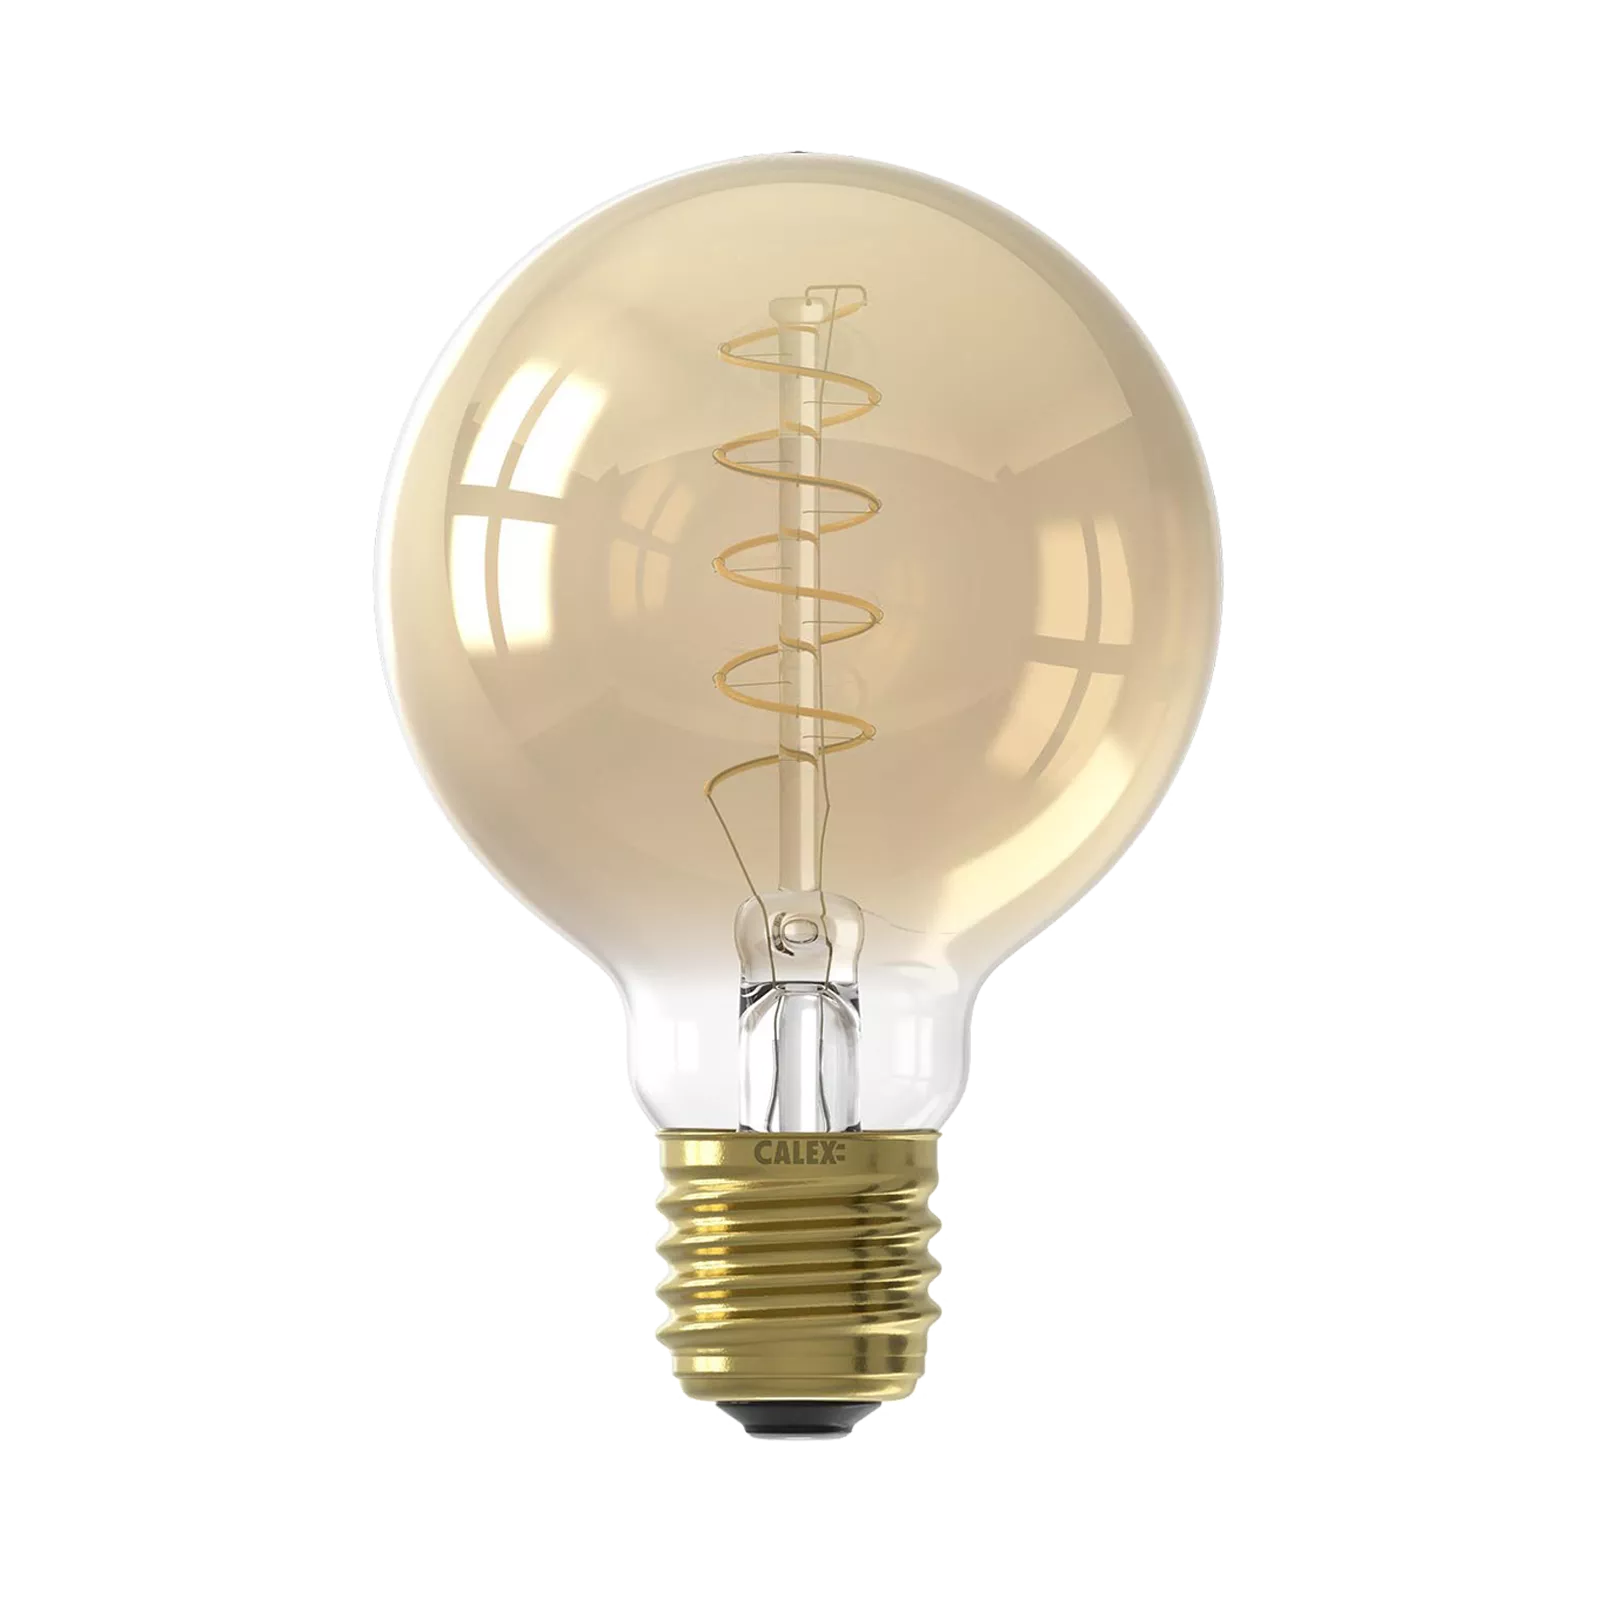 LED lamp (80x120mm) Flex Globe - Gold 